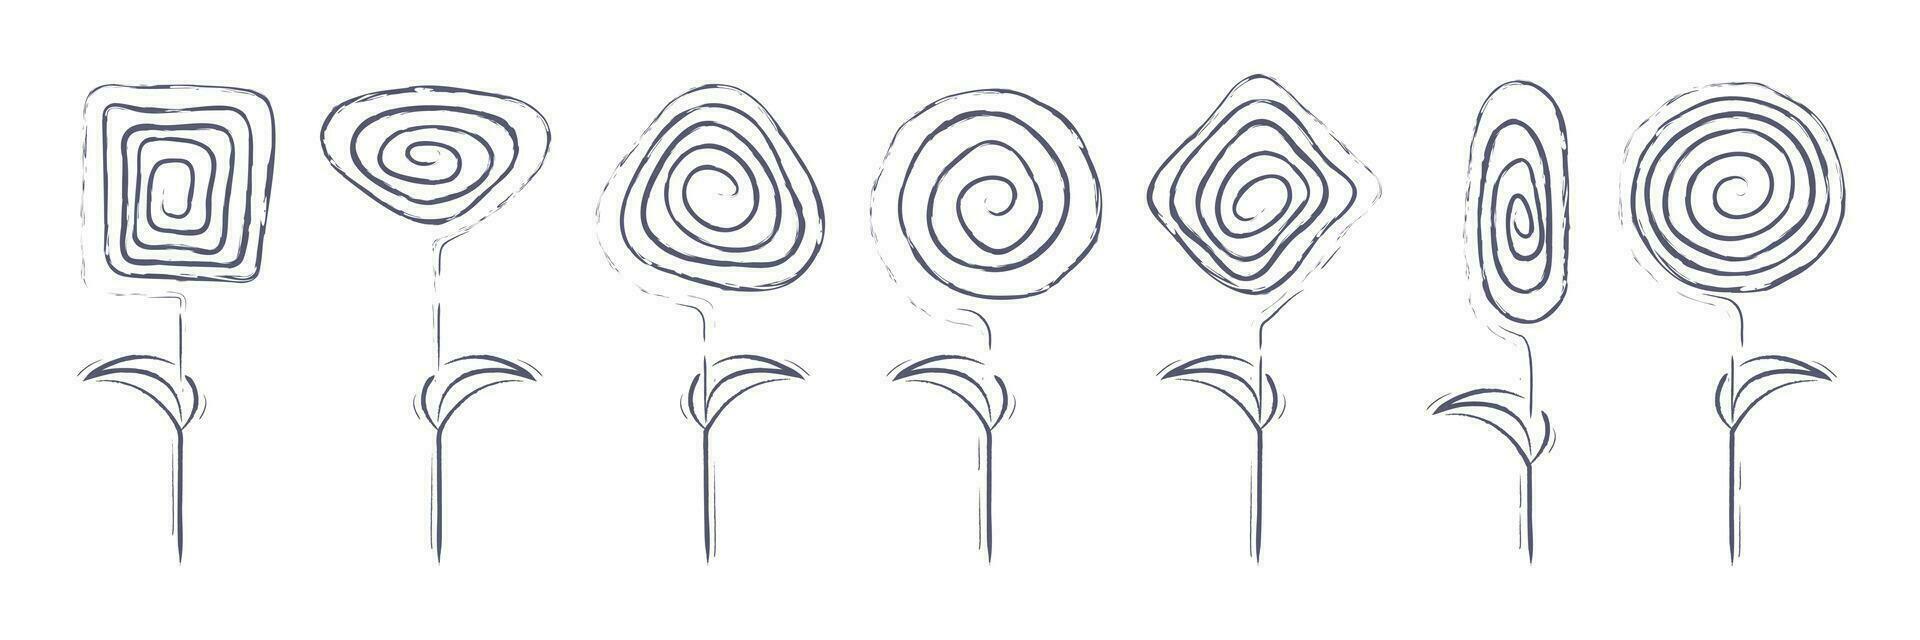 abstrakt Blumen isoliert. einstellen von Spiral- geometrisch Formen im das bilden von Blumen. modern linear Elemente zum Poster, Kosmetik, Karten, Einladung Vorlagen, Textil- und grafic Design. Vektor. vektor